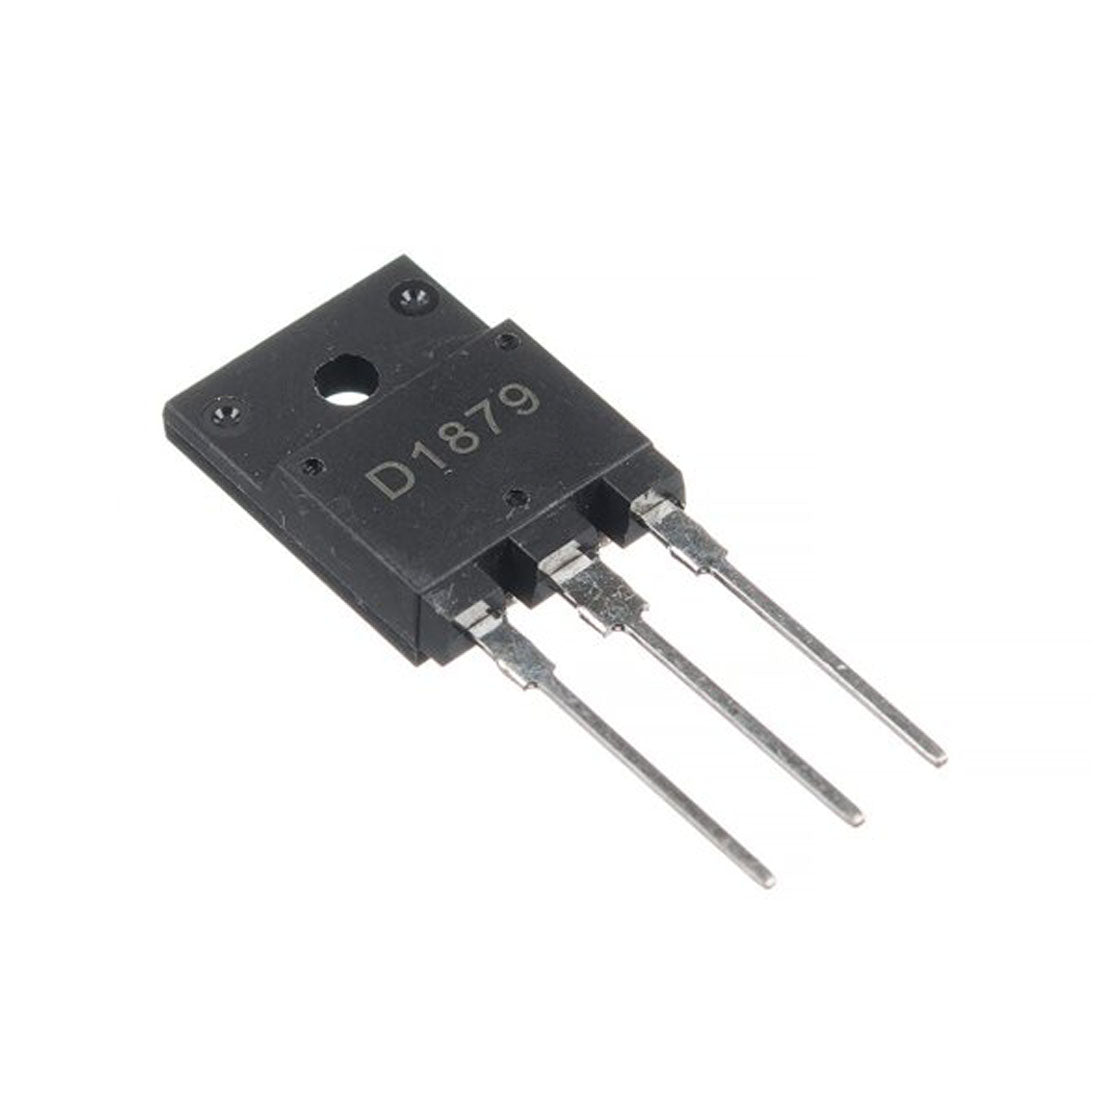 2SD1879 componente elettronico, circuito integrato, transistor, 3 contatti